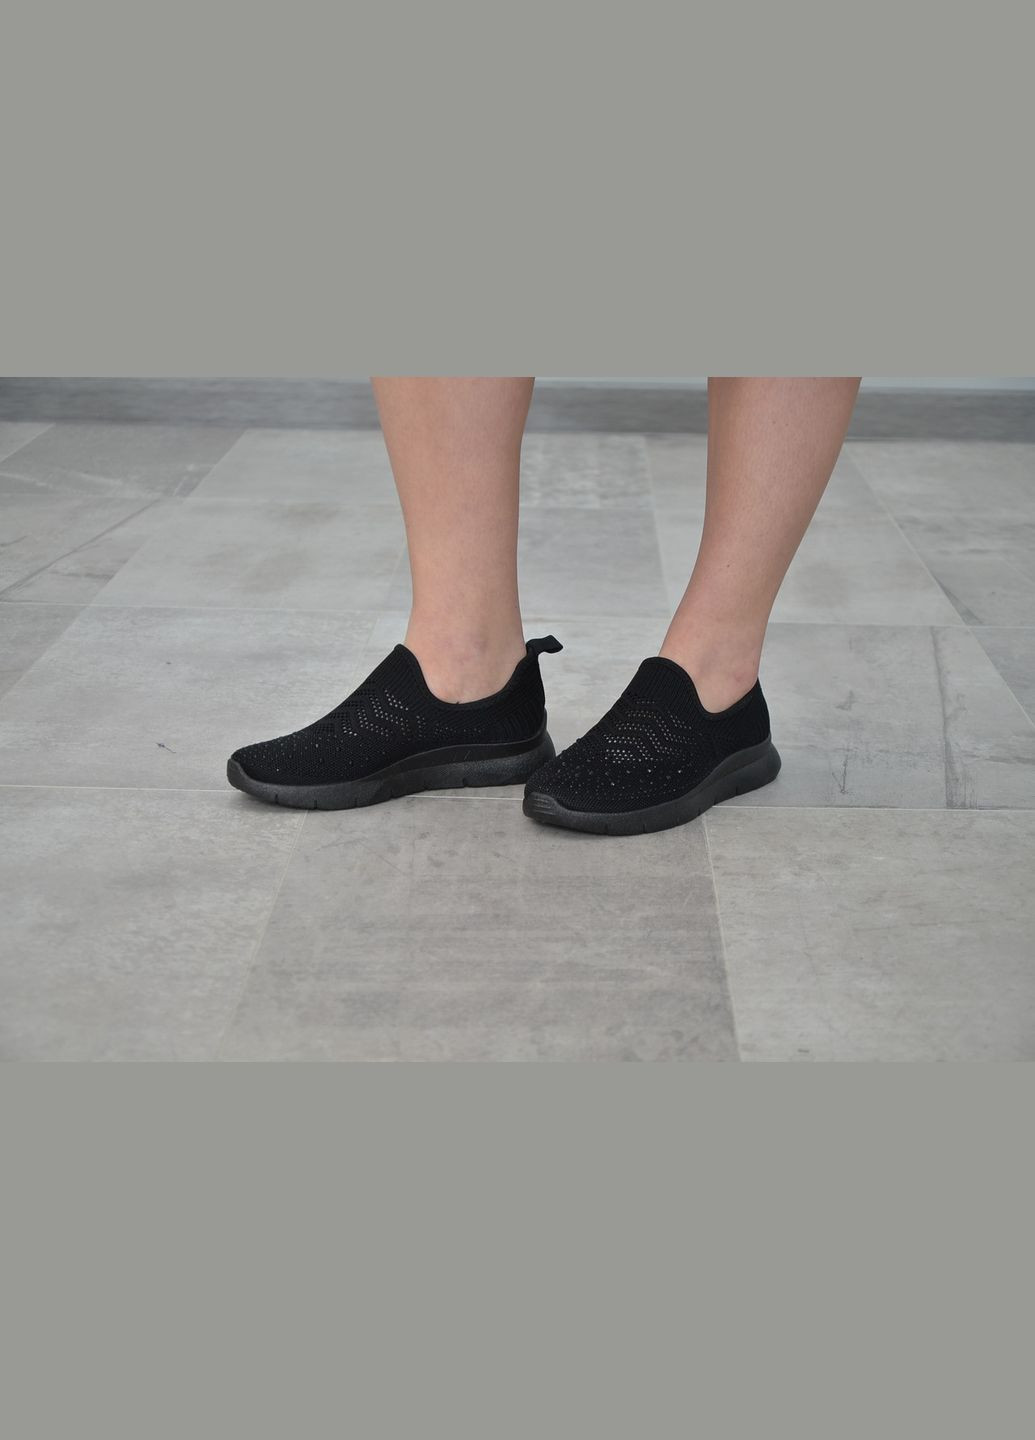 Черные летние летние женские кроссовки, разные цвета, (размеры: 36, 37,, 39, 40) 38, No Brand